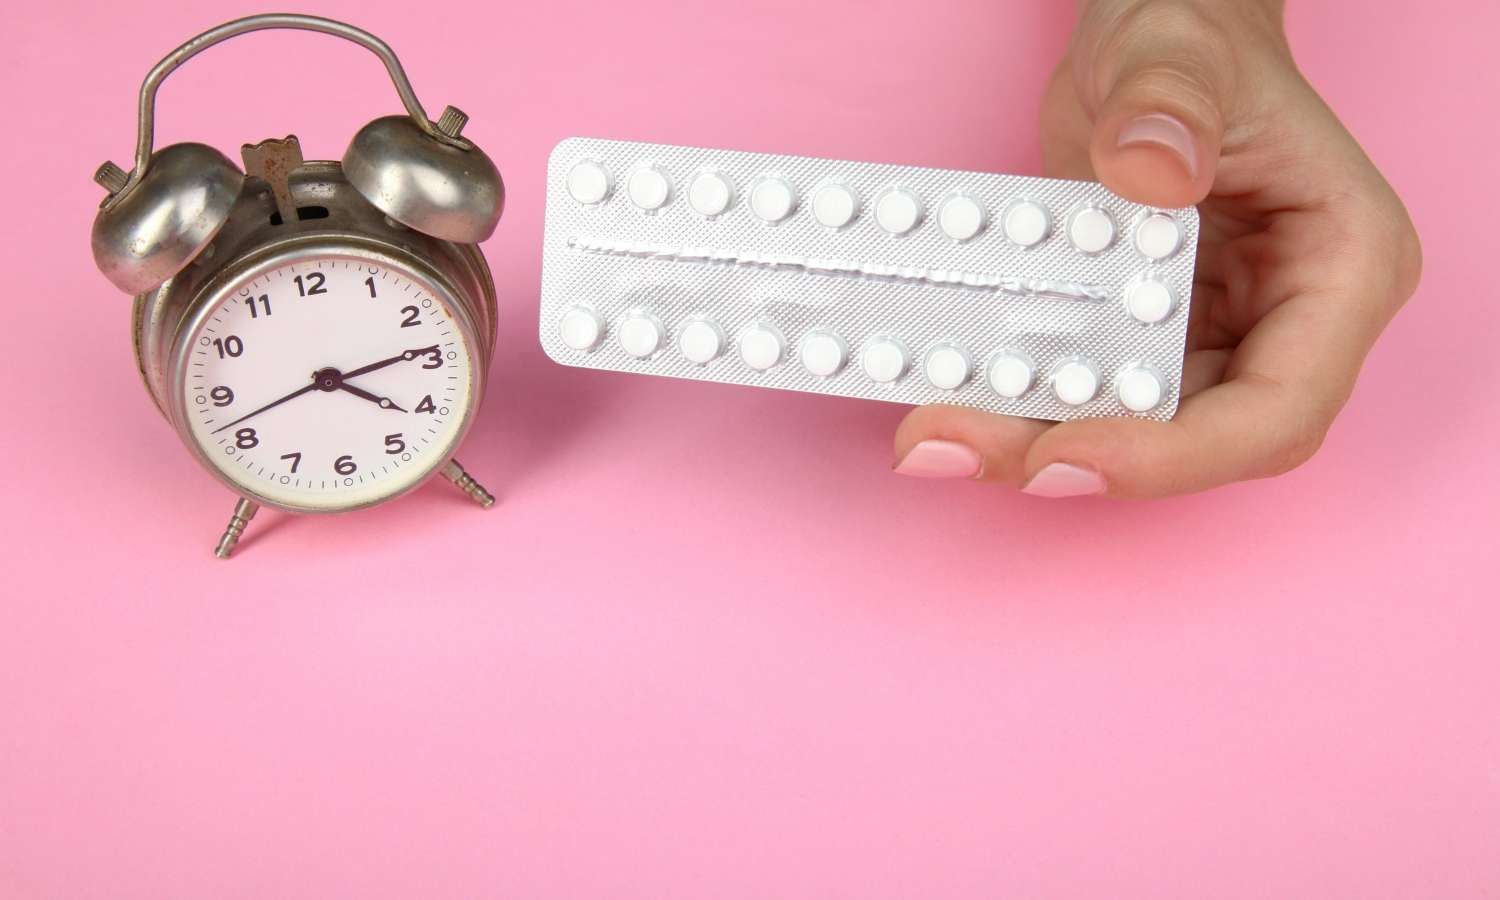 mywy tabletki antykoncepcyjne